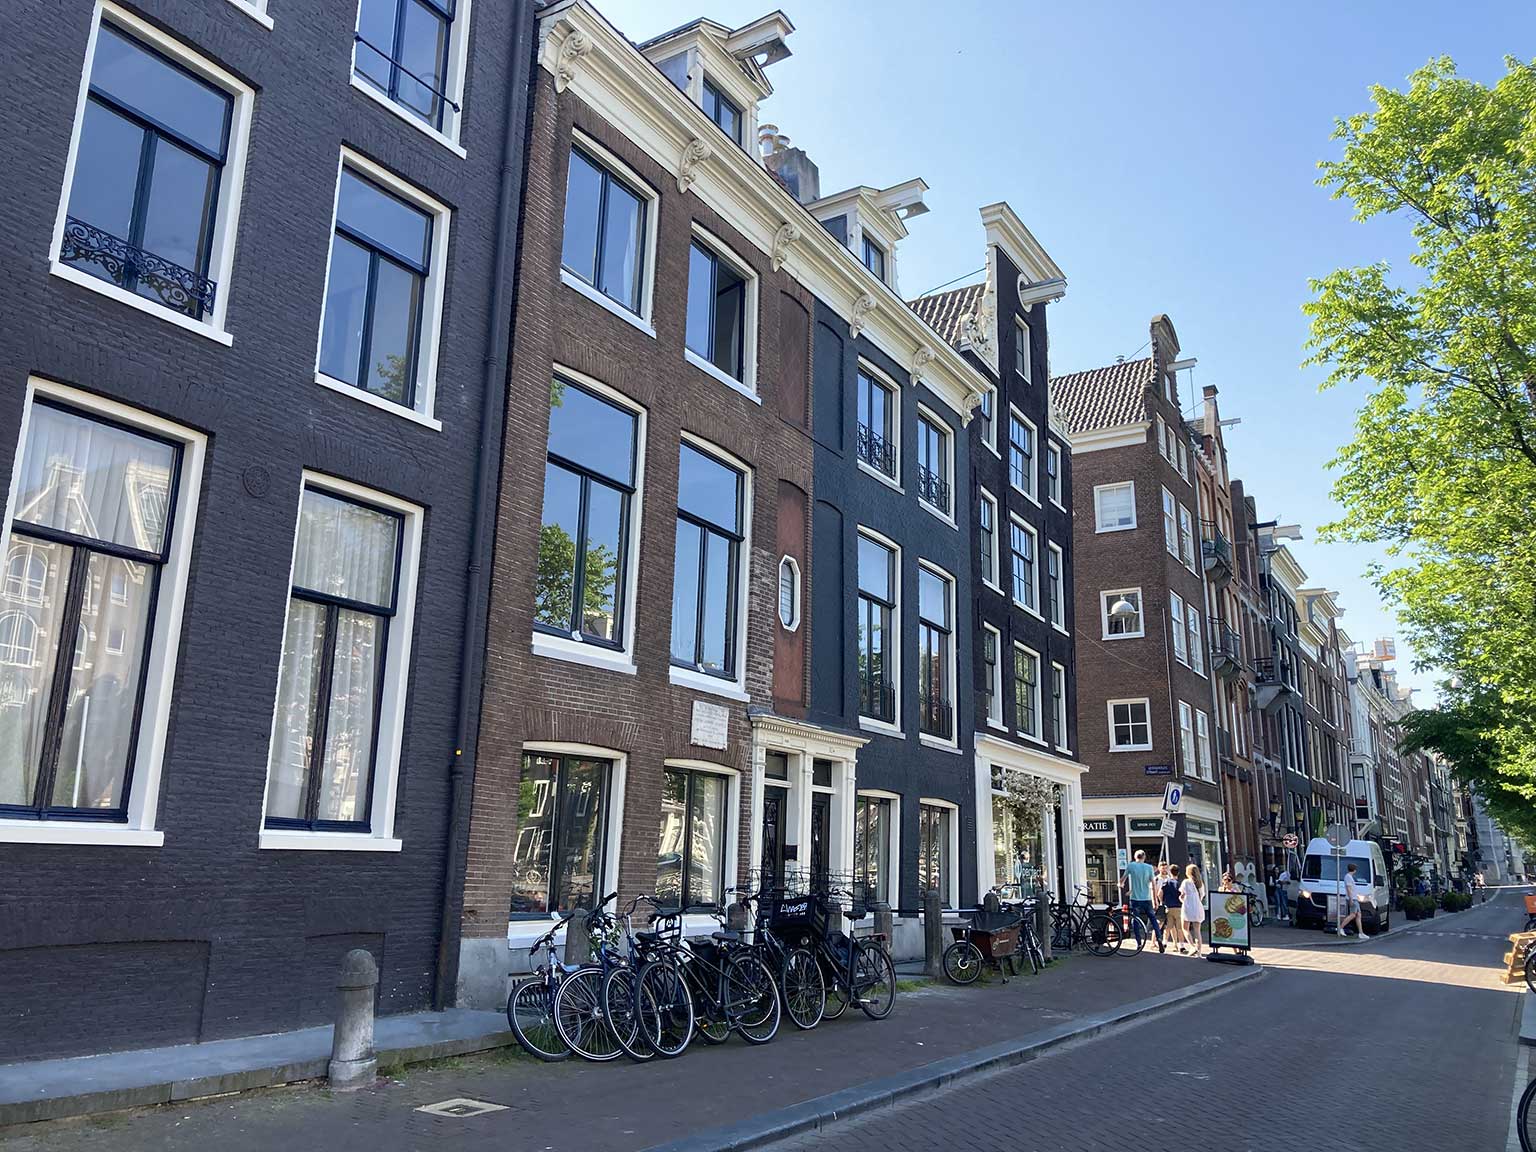 Prinsengracht, Amsterdam, met Locatelli's huis op nummer 506